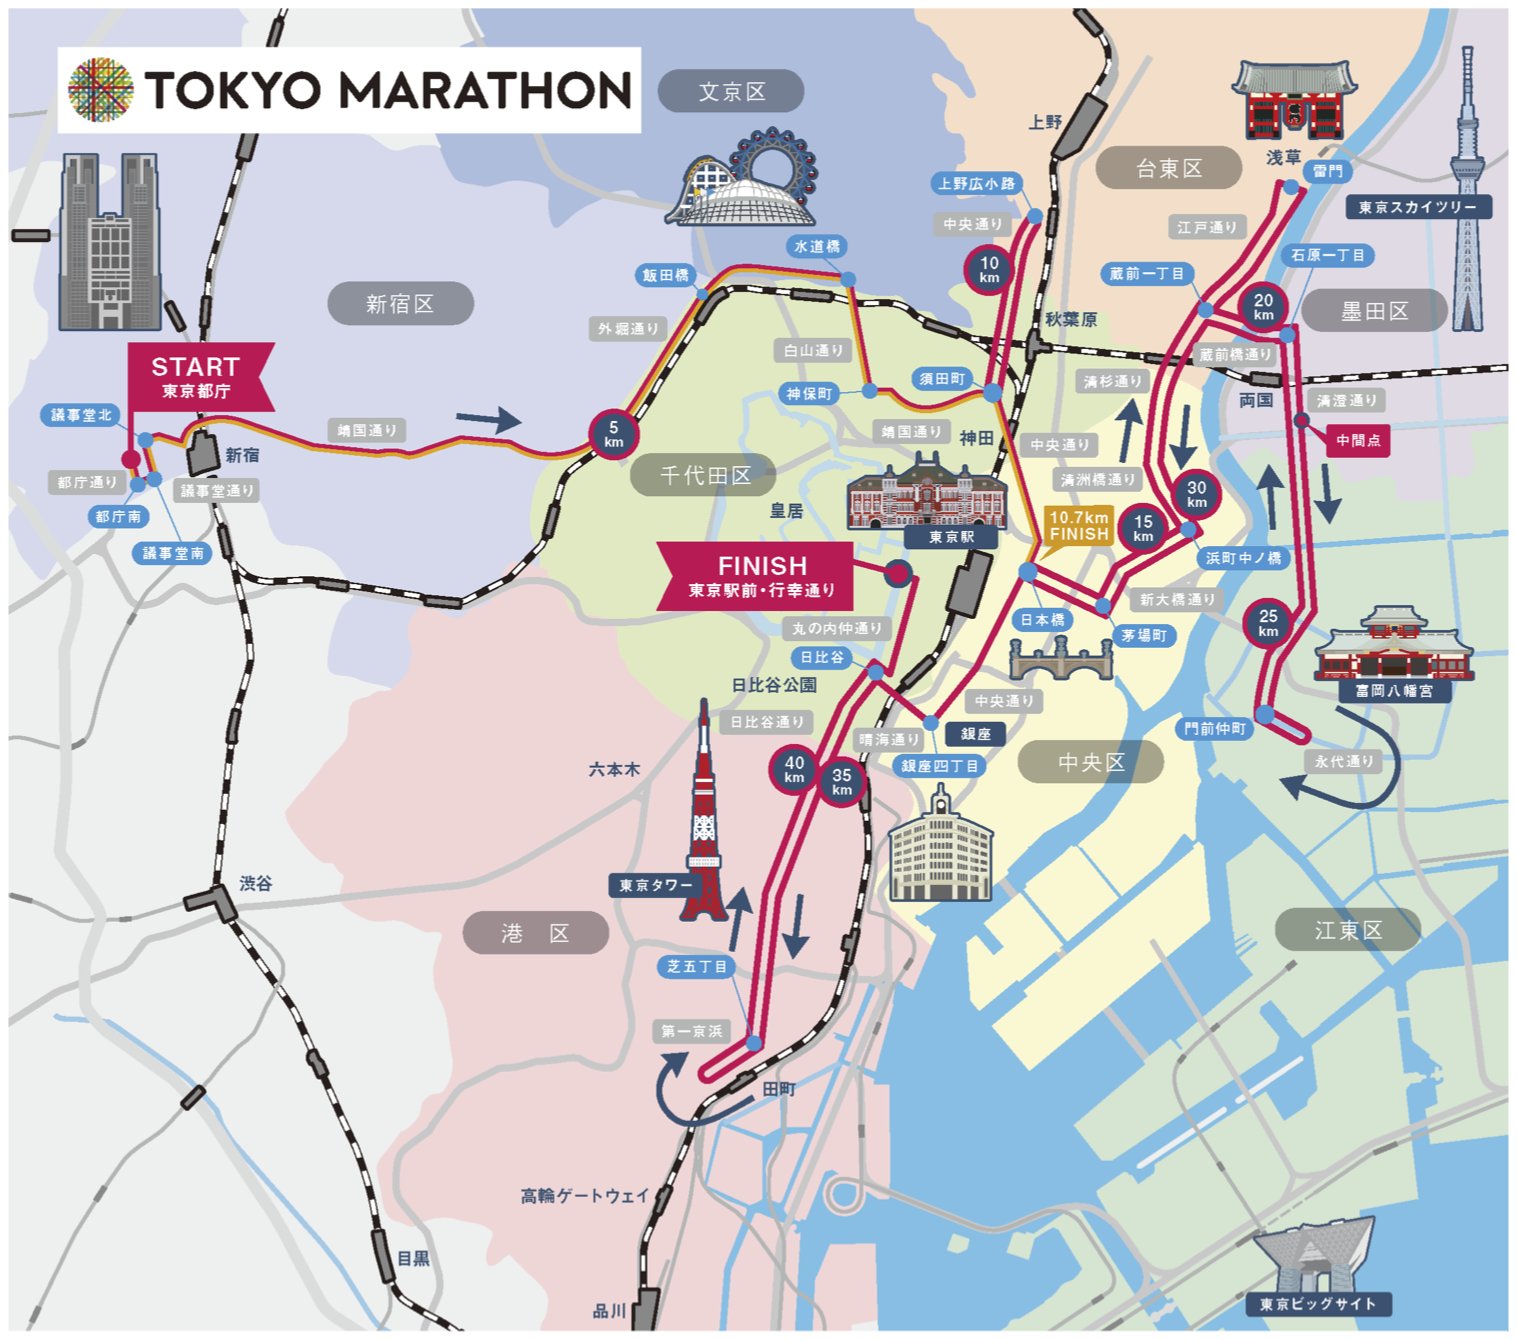 Tokyo Marathon Course